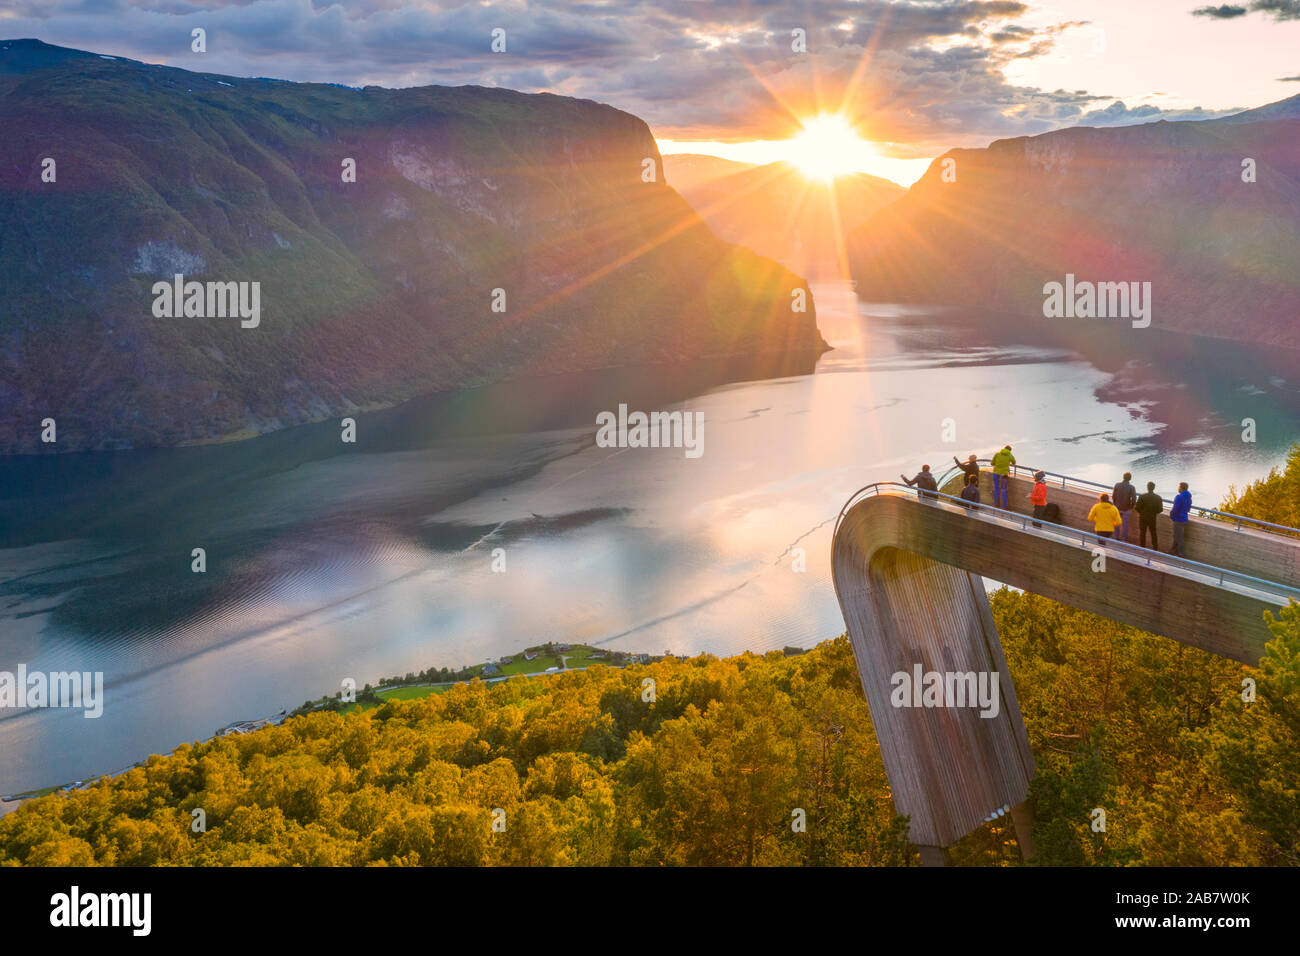 Les gens d'admirer le coucher du soleil à partir de la plate-forme de vue Stegastein au-dessus du fjord, vue aérienne, l'Aurlandsfjord, comté de Sogn og Fjordane, Norvège, Scandinavie Banque D'Images